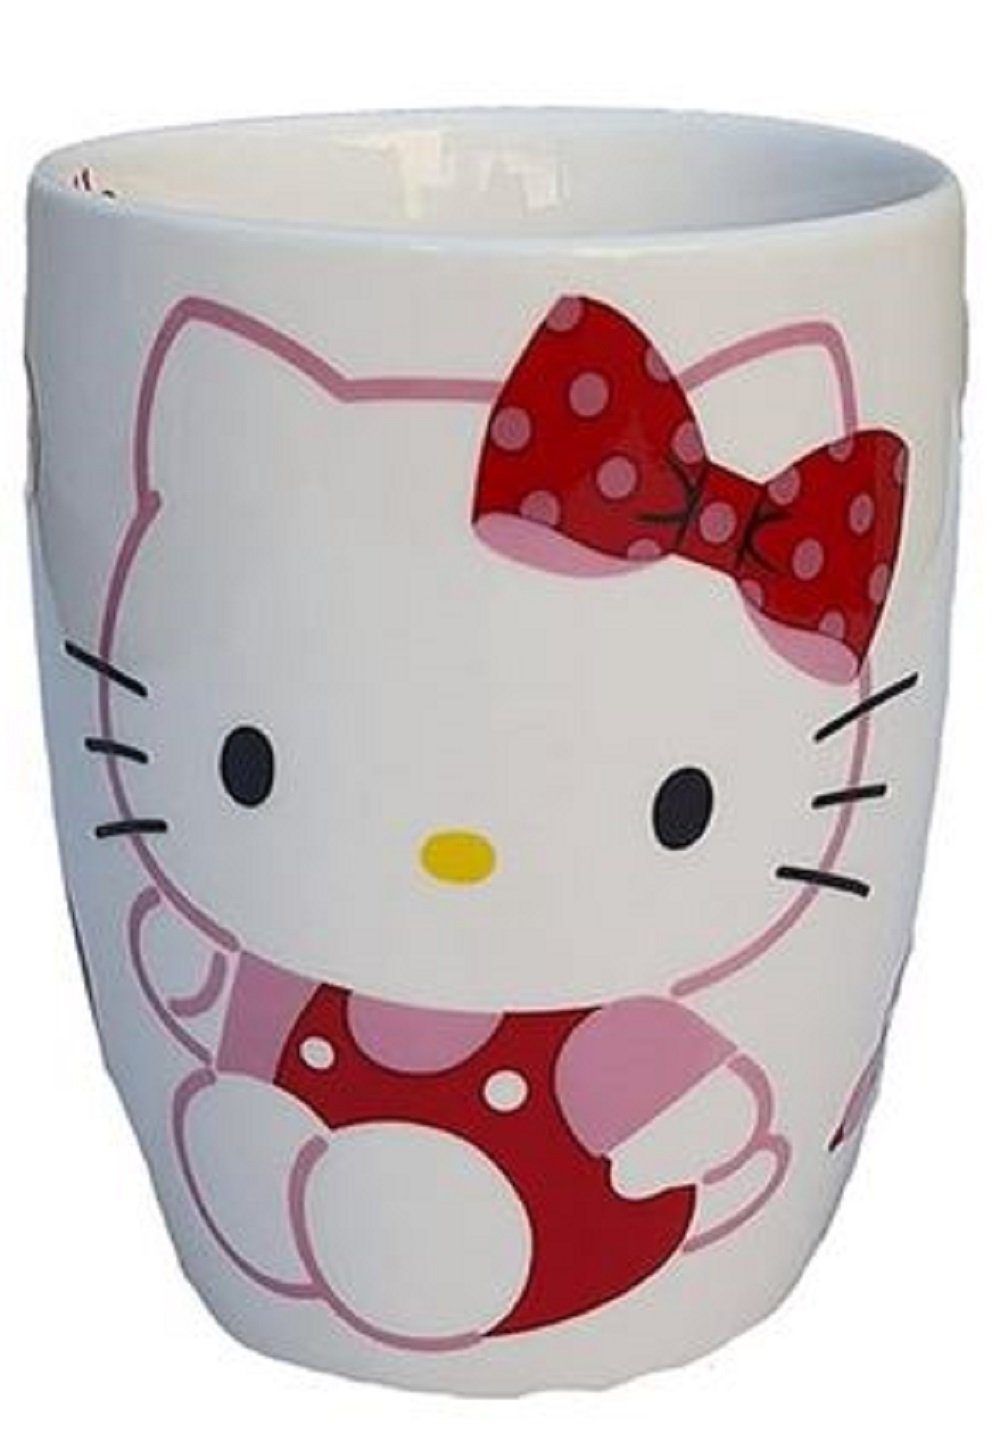 Hello Kitty Trinklernbecher Katze Sanrio für Kaffee und Tee - Kinder Becher, Kollektion, Tasse - Tee/Kaffee - Ideal Als Geschenk